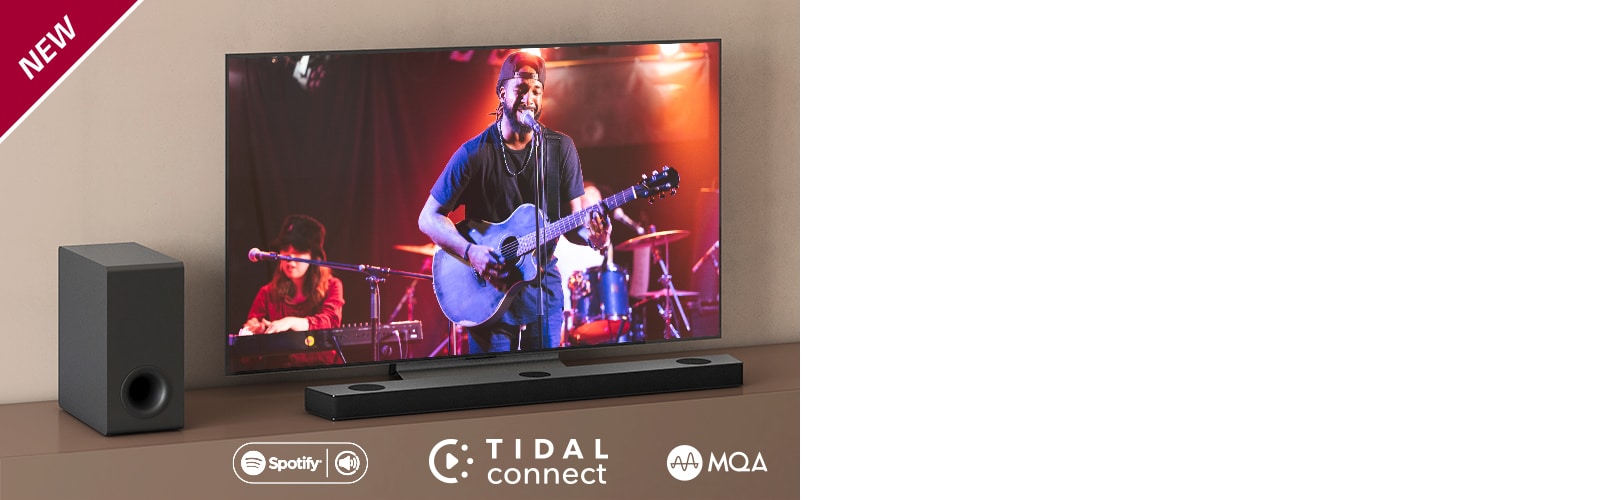 El LG TV está colocado en la estantería marrón y la barra de sonido LG S95QR delante del televisor. El subwoofer está instalado en el lado izquierdo del TV. El TV muestra la escena de un concierto. La marca NEW se visualiza en la esquina superior izquierda.